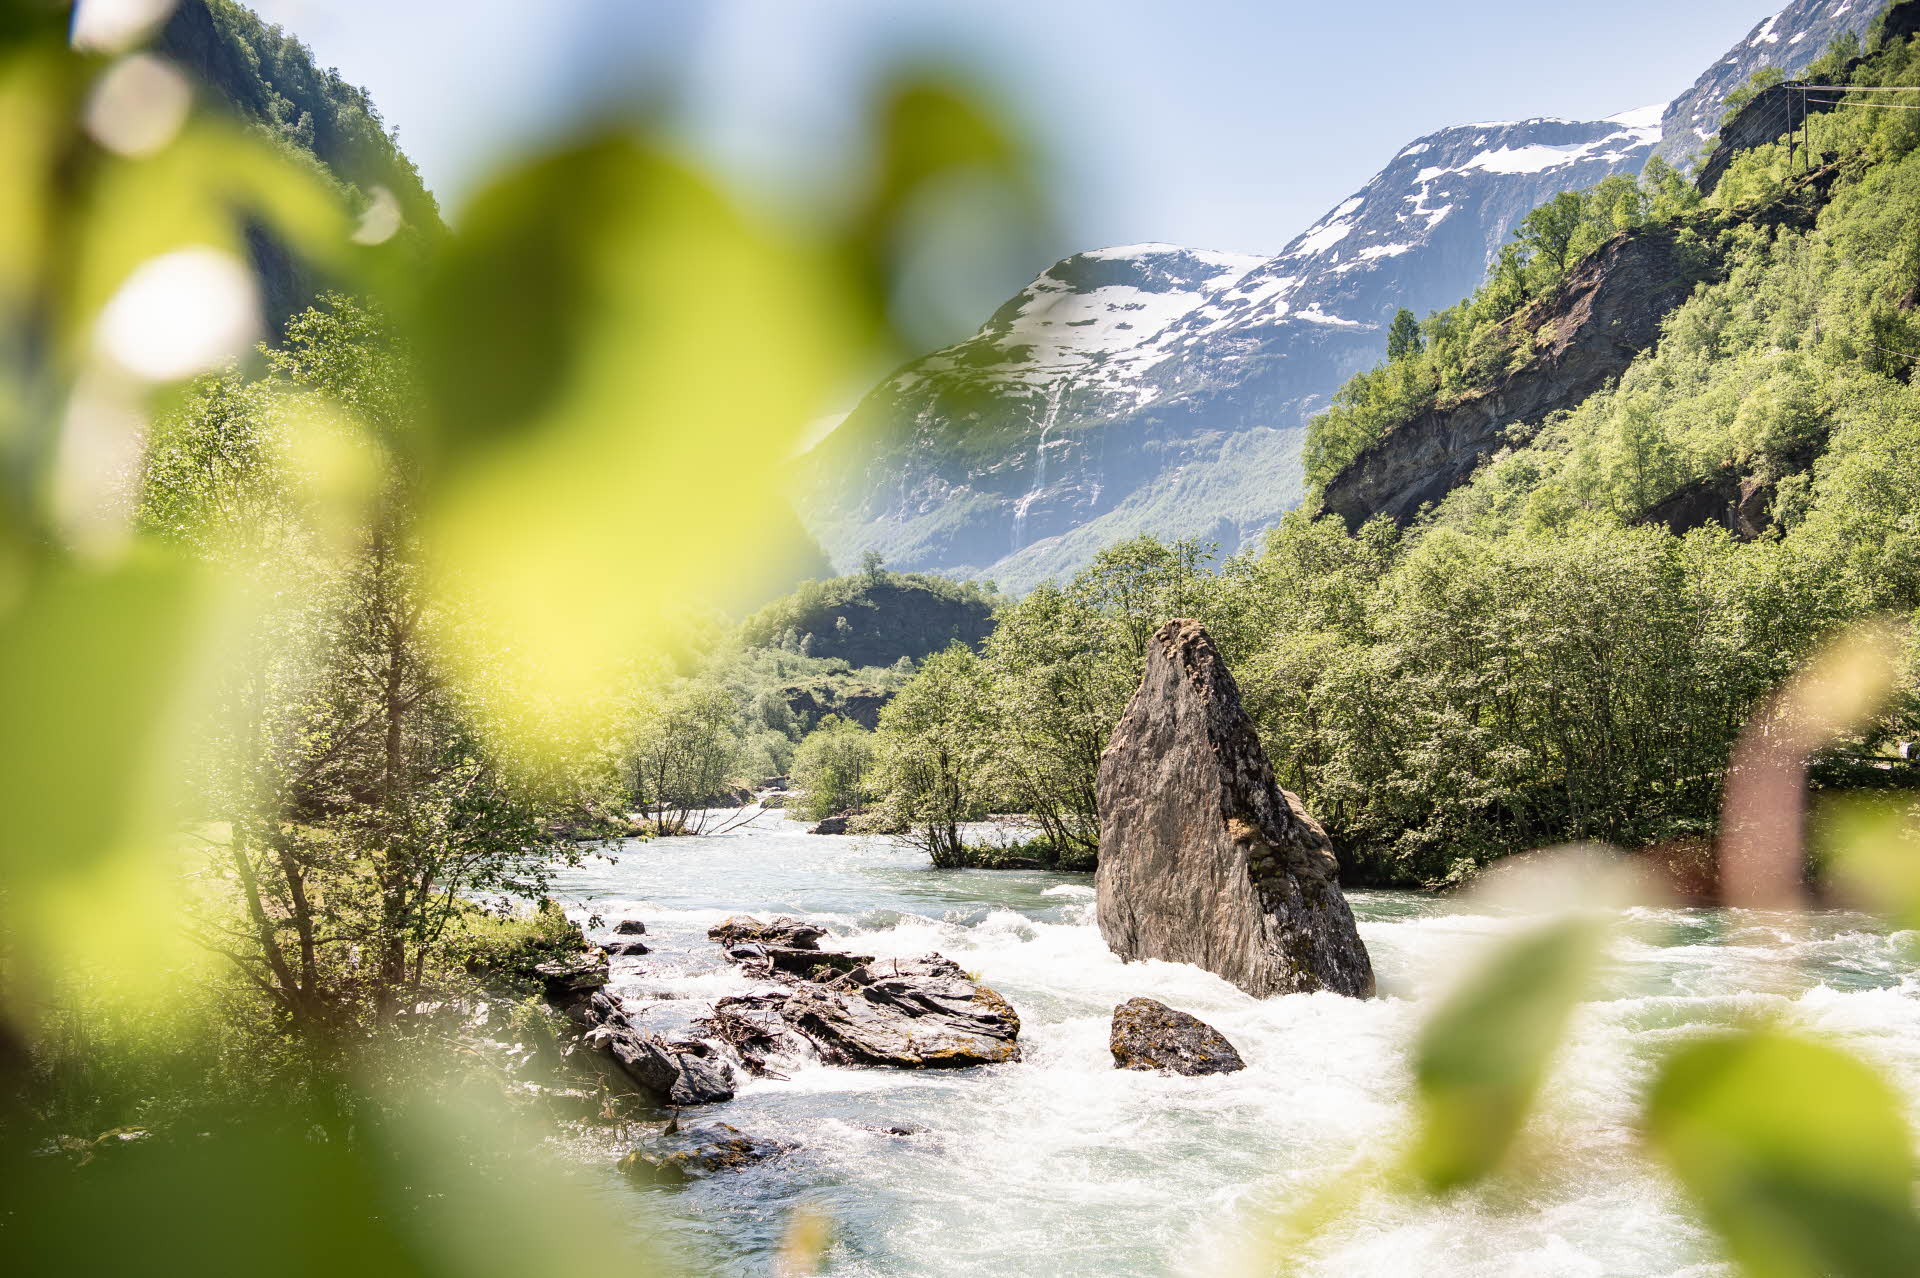 Enorme roca puntiaguda en mitad del agitado río Flåm en un exuberante paisaje de verano con altas montañas nevadas al fondo